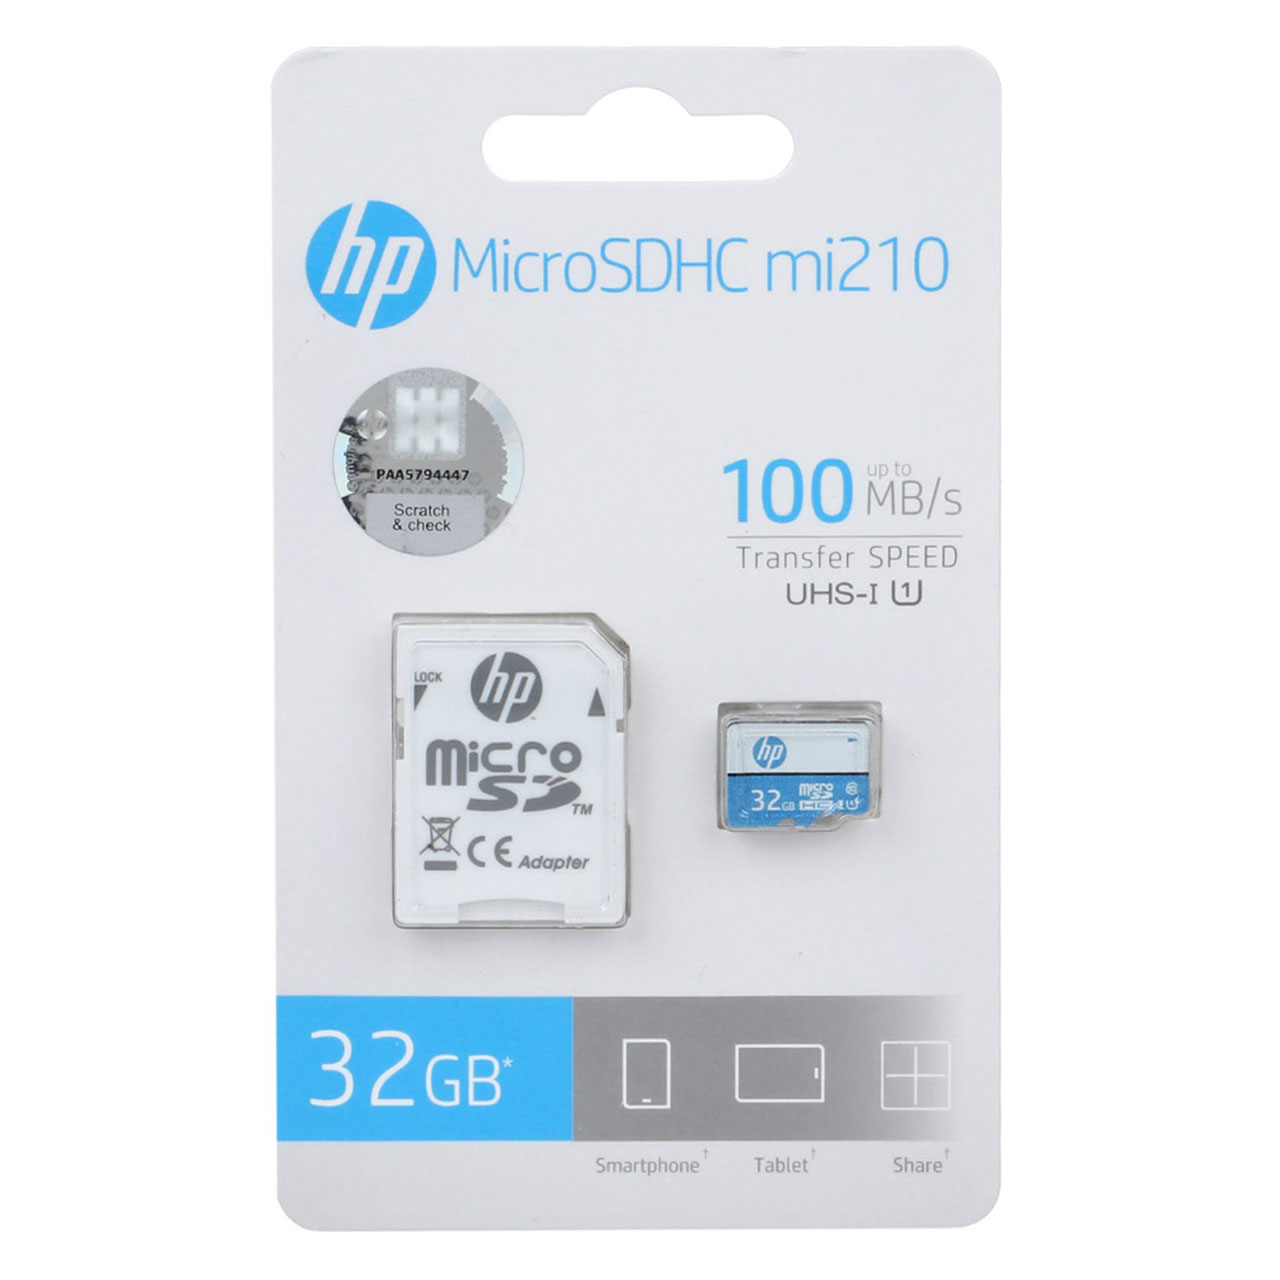 HP mi210 U1 microSDHC & adapter Class 10-100MB/s - 32GB (دو ساله سورین